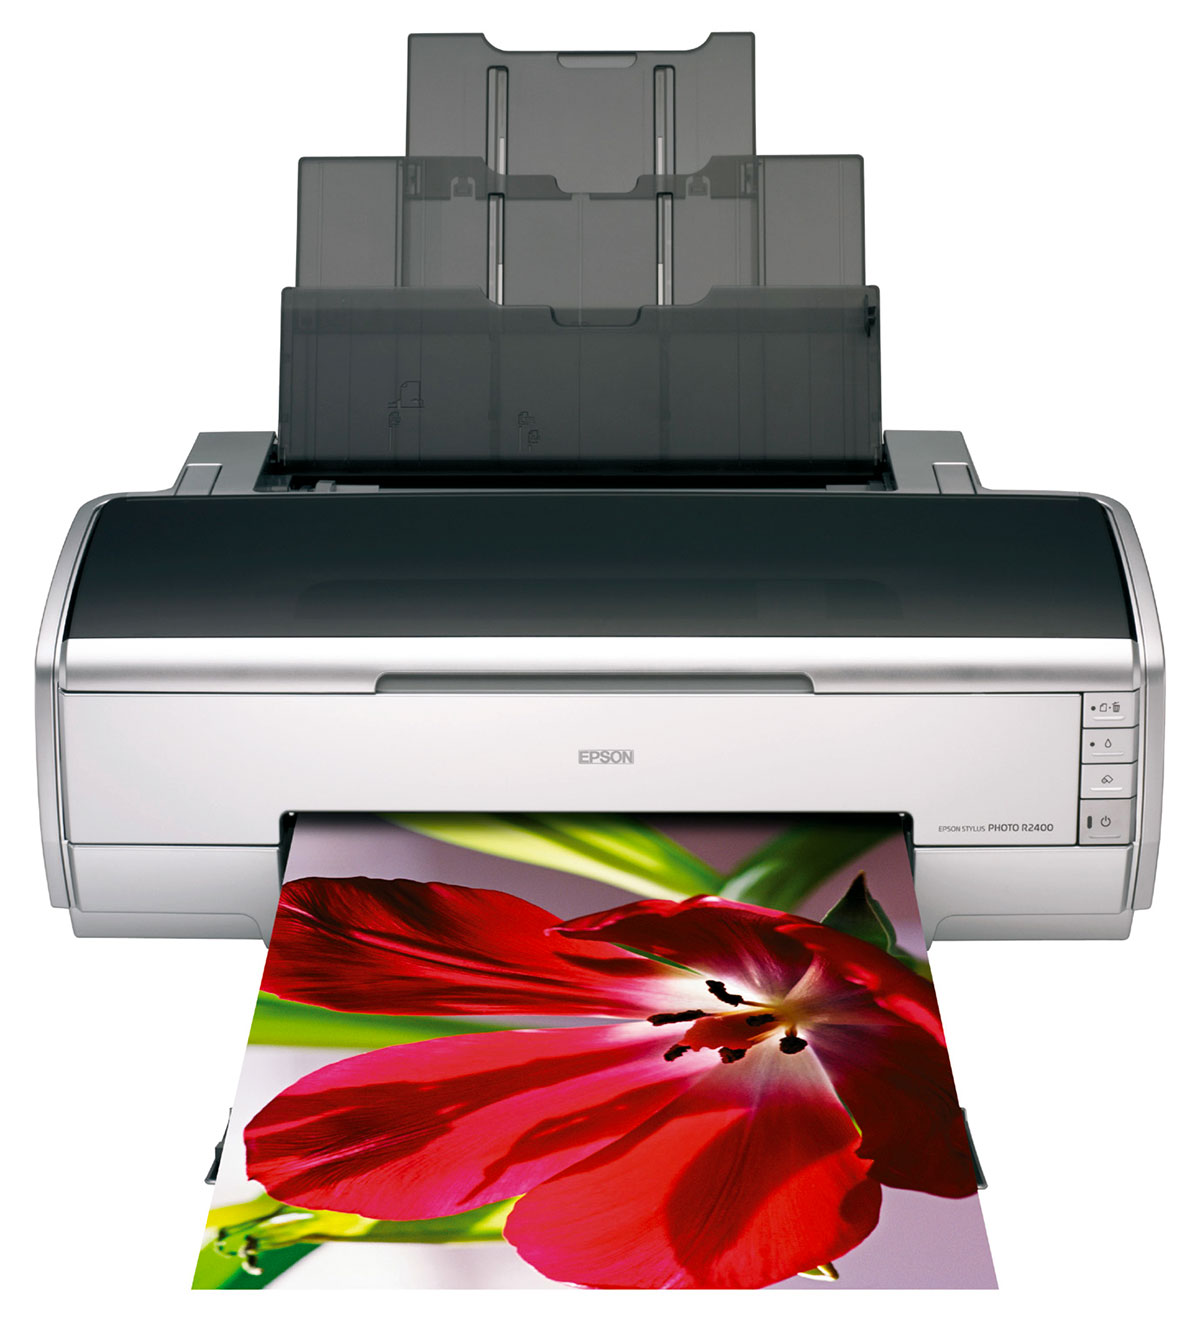 Figura 3: un esempio di stampante con inchiostri Epson UltraChrome K3 per la stampa fotografica professionale fino al formato A3+